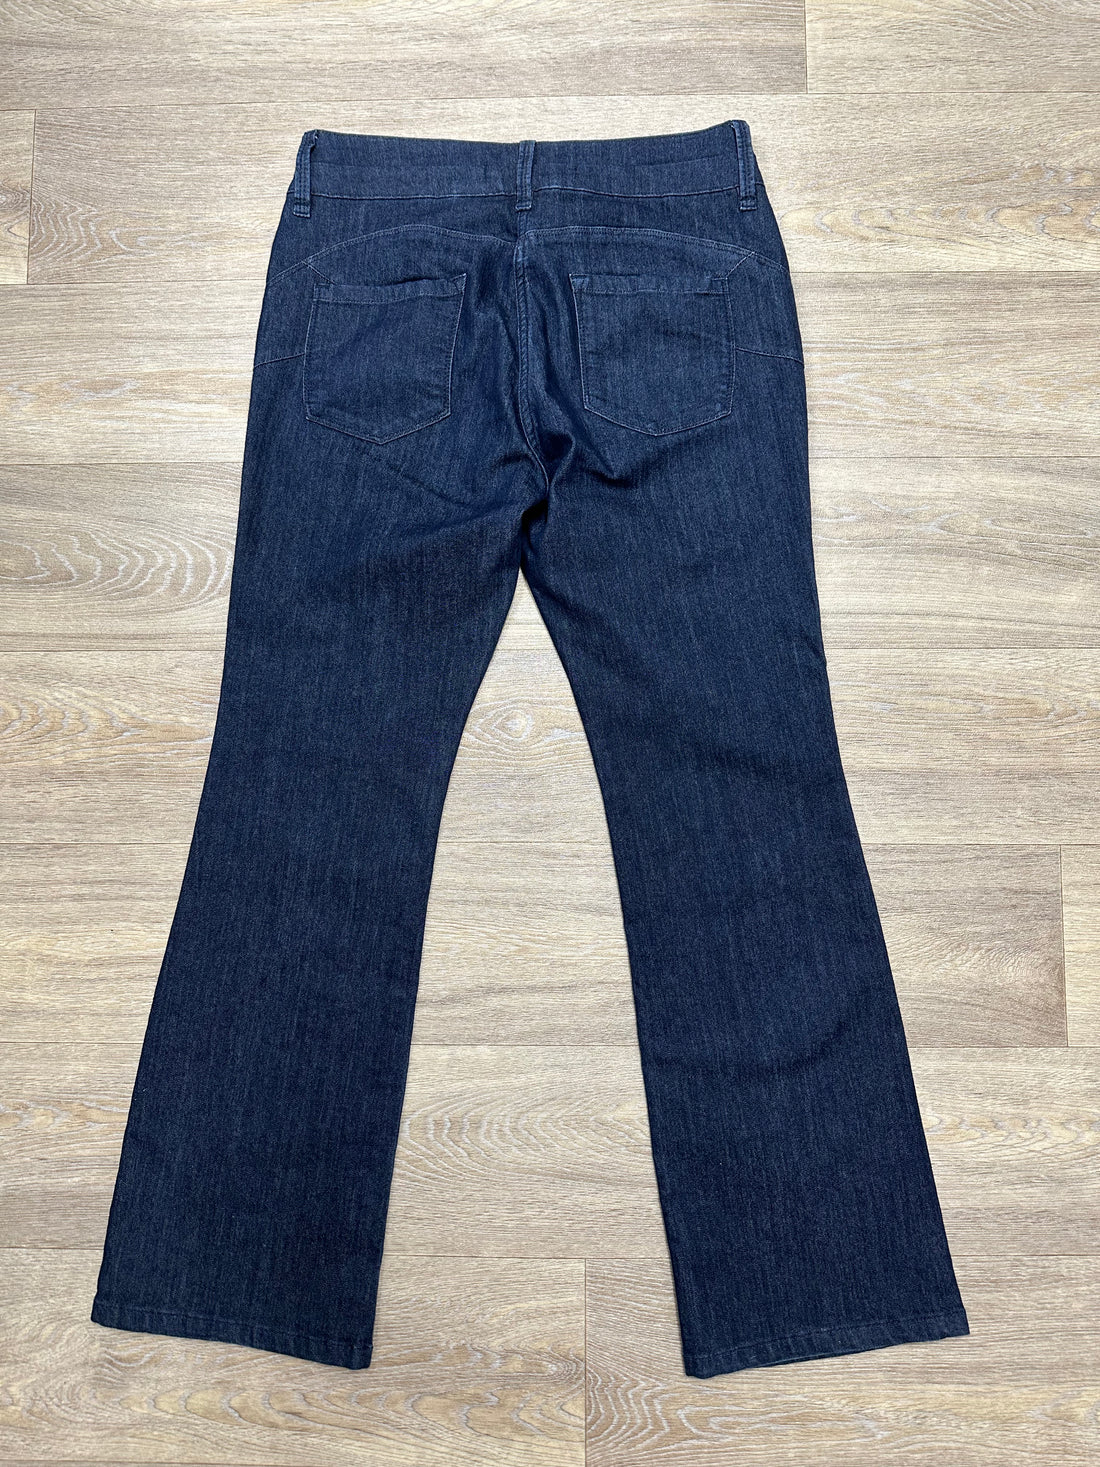 Next Blue Slim Lift & Shape Bootcut Jeans - Size 14